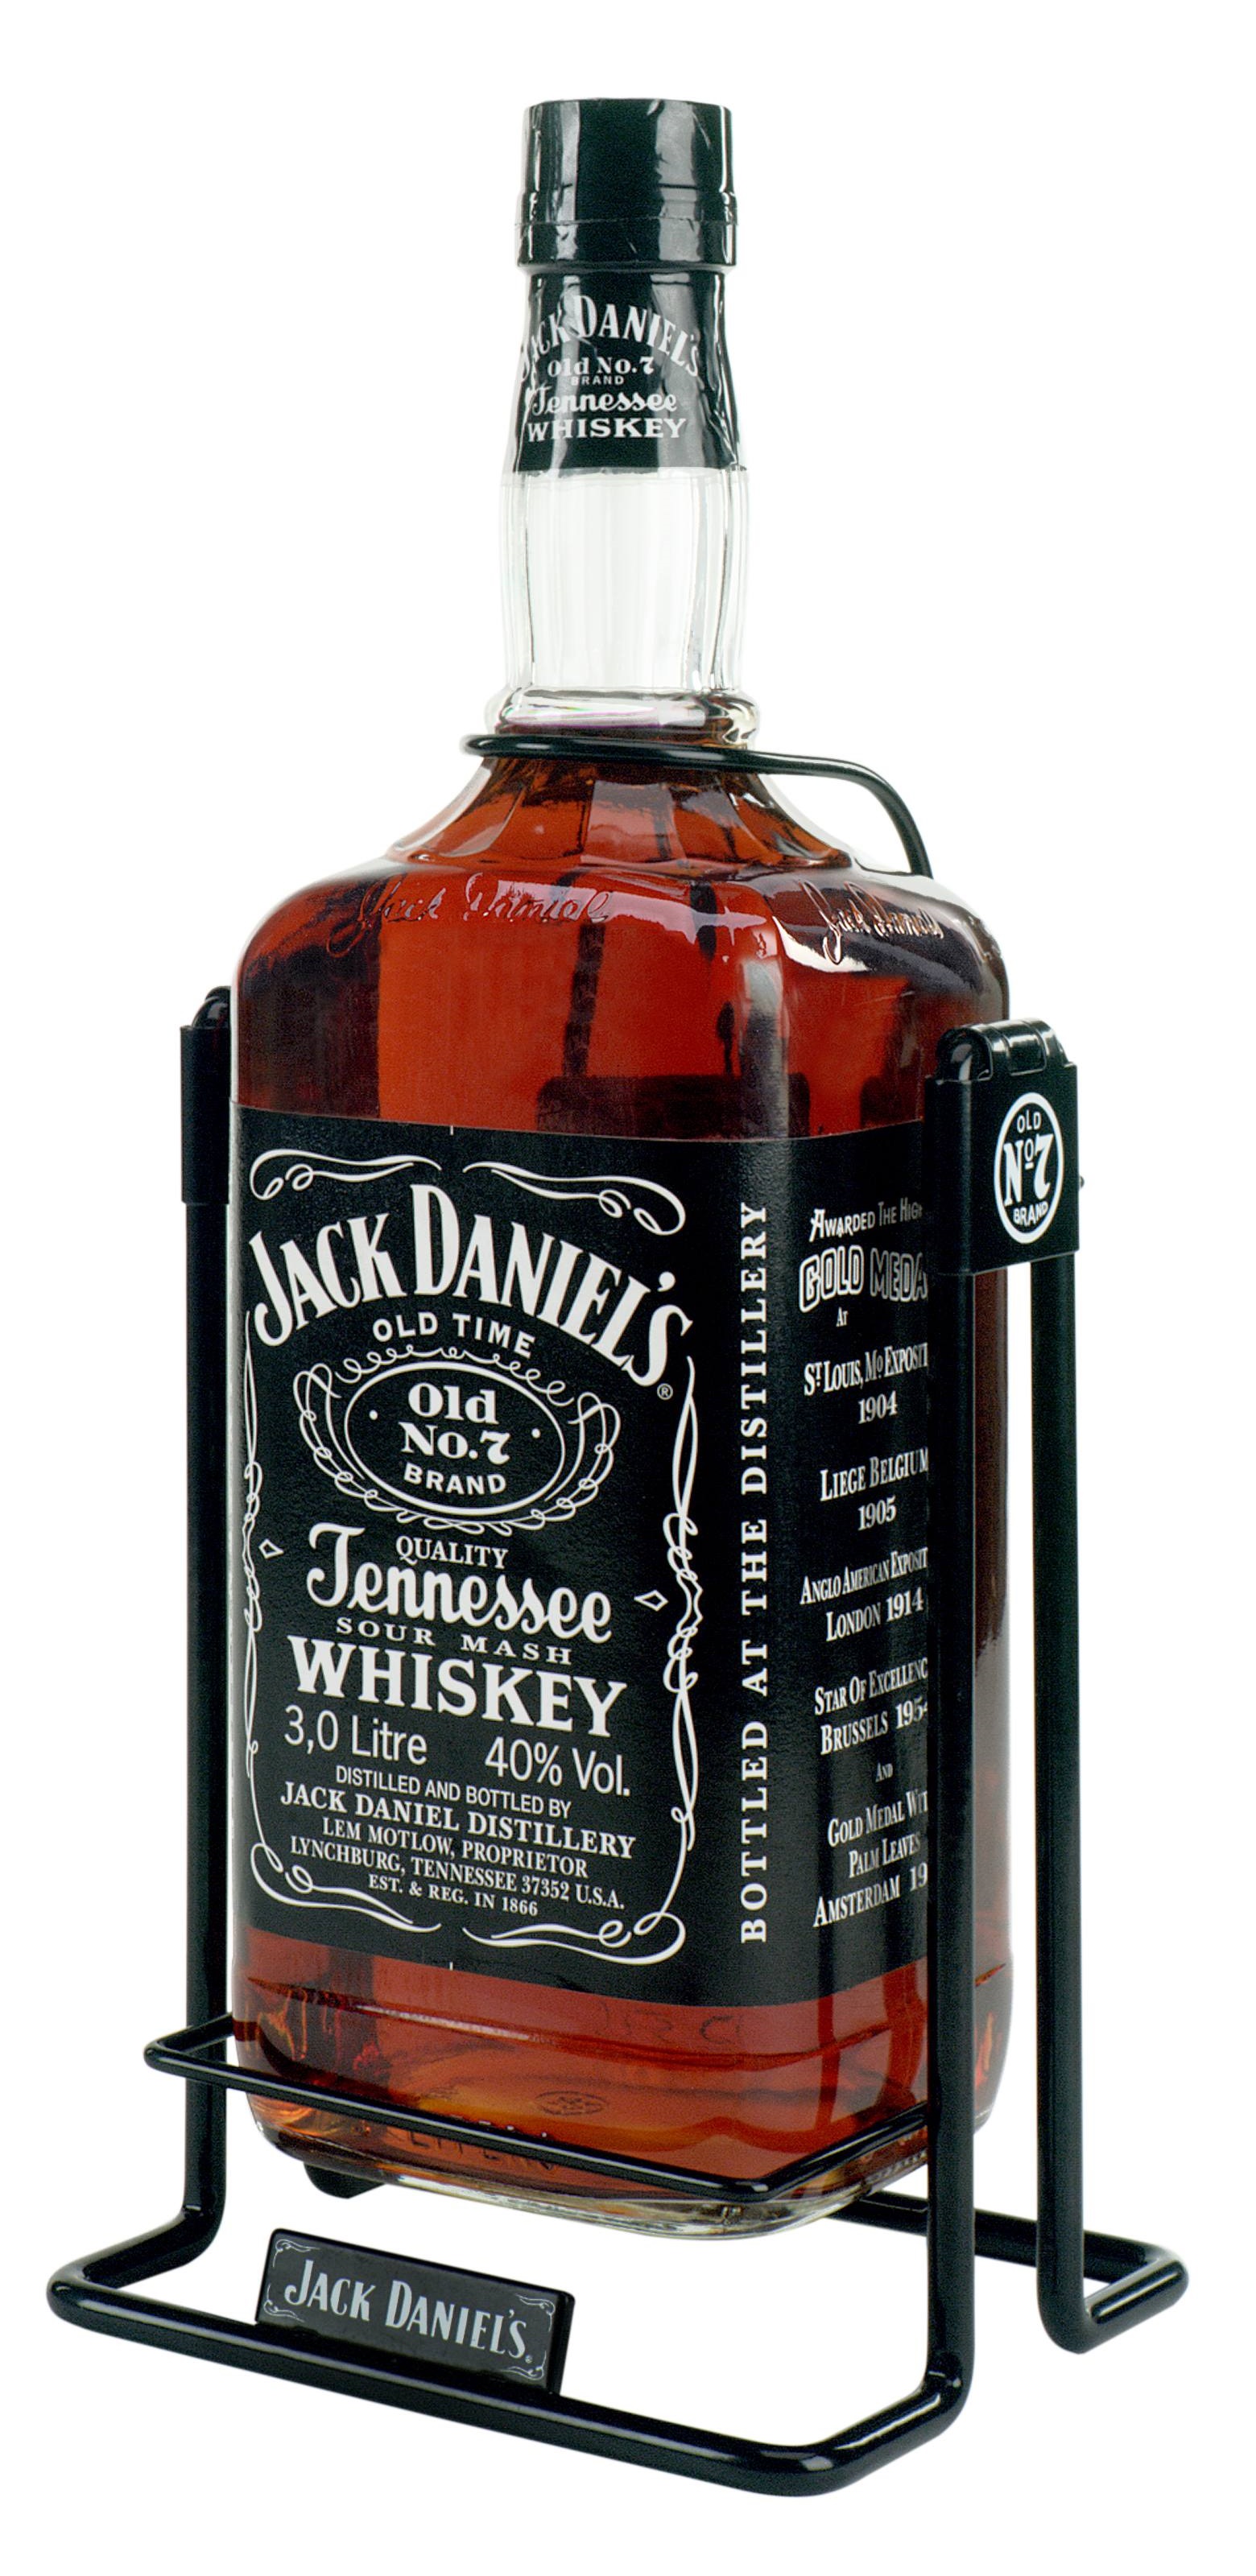 Whisky JACK DANIEL'S N°7 Craddle - 3L